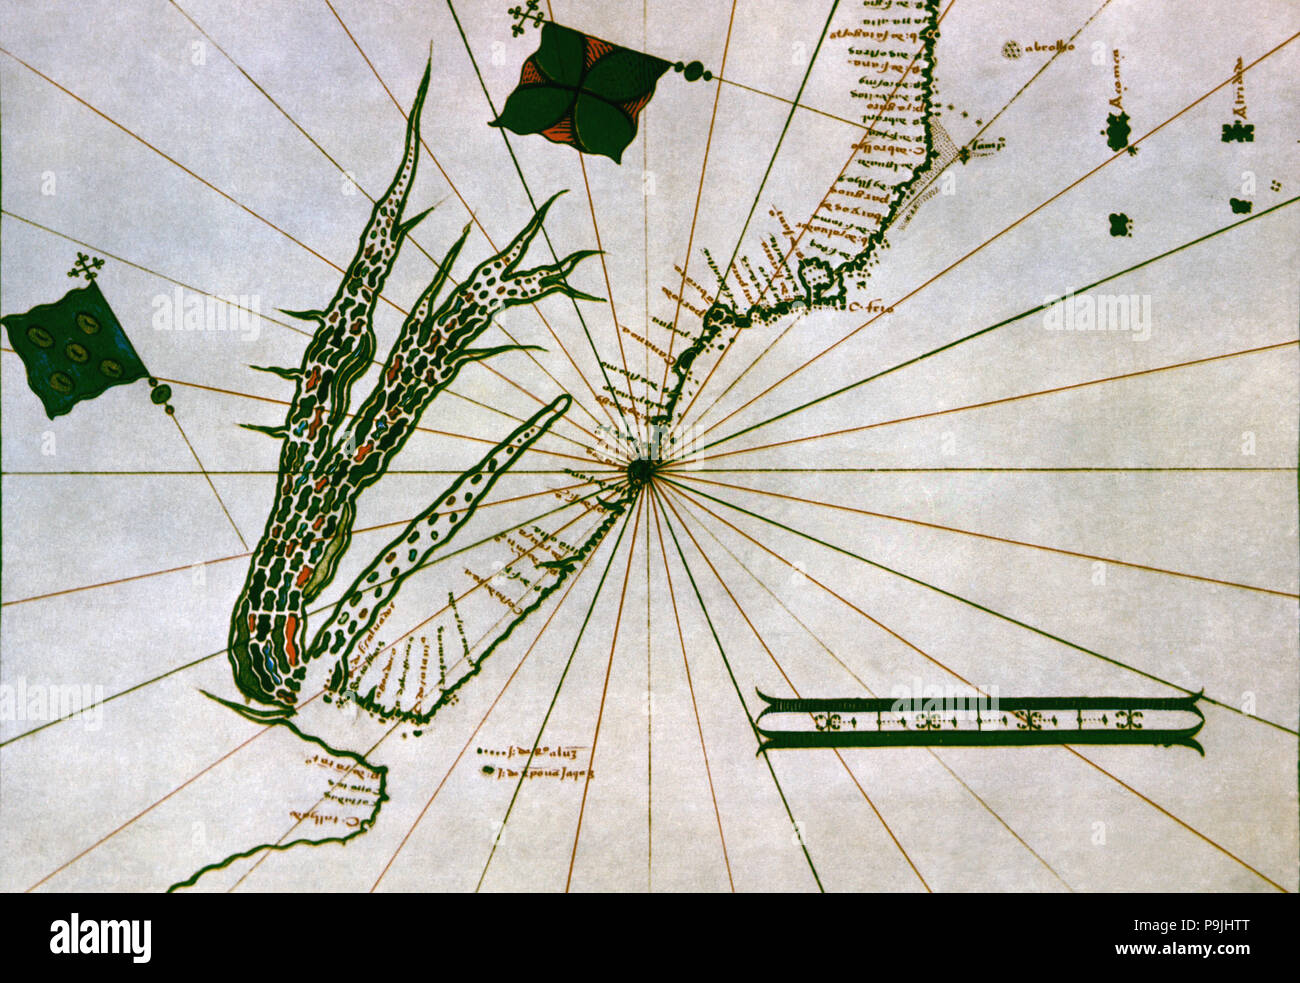 Mapa de América del Sur donde se ve el río de La Plata, 1530 - 1535, Tabla 22 en el Atlas Mediceo. Foto de stock